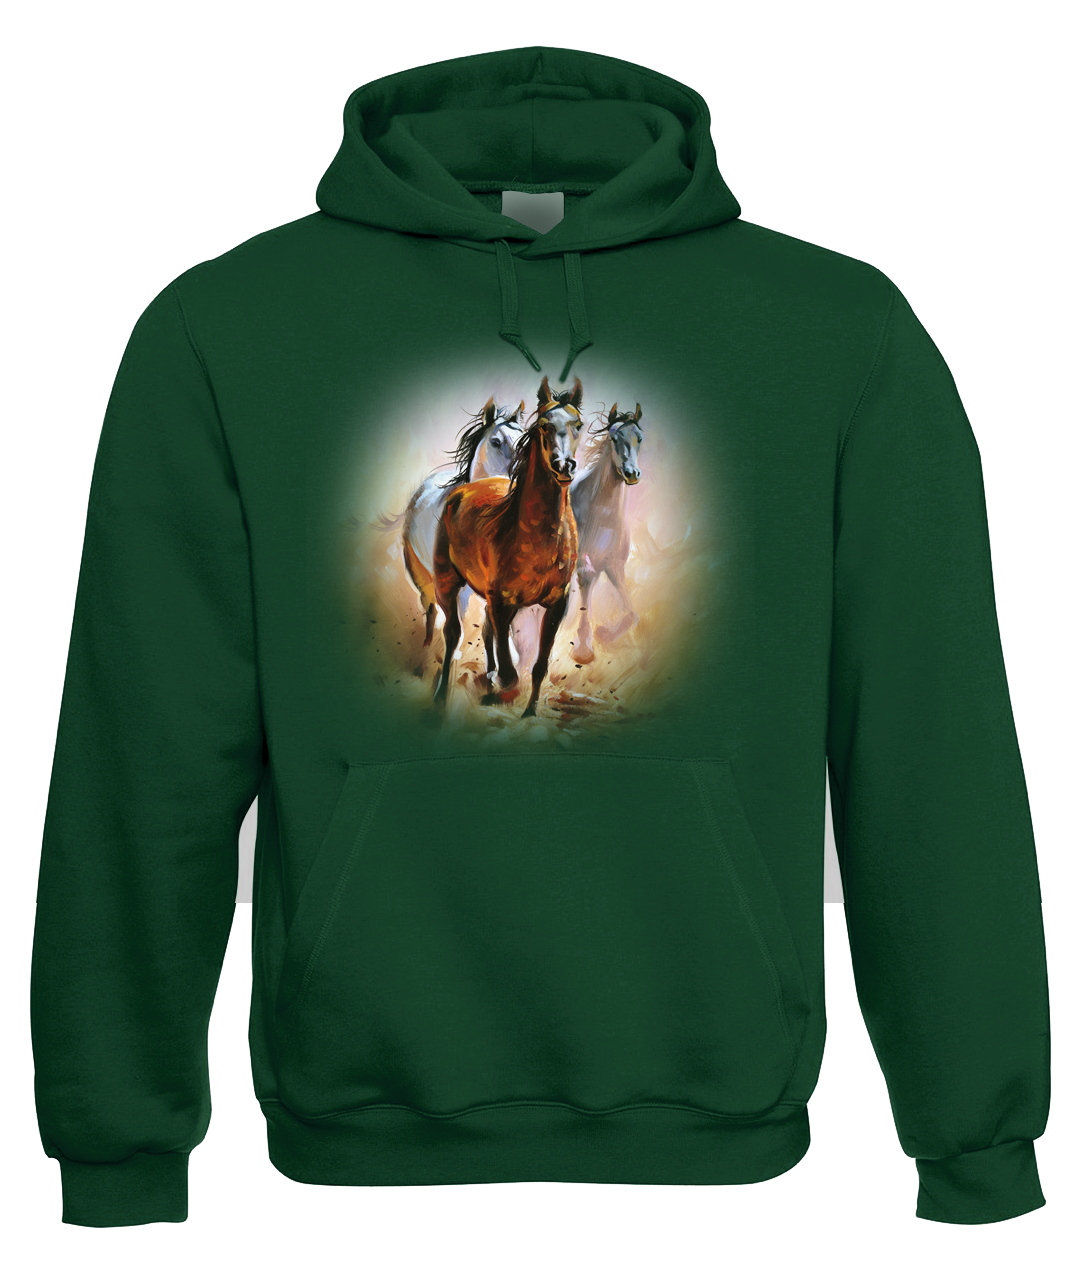 Mikina s koněm - Malované koně Velikost: XL, Barva: Zelená lahvová